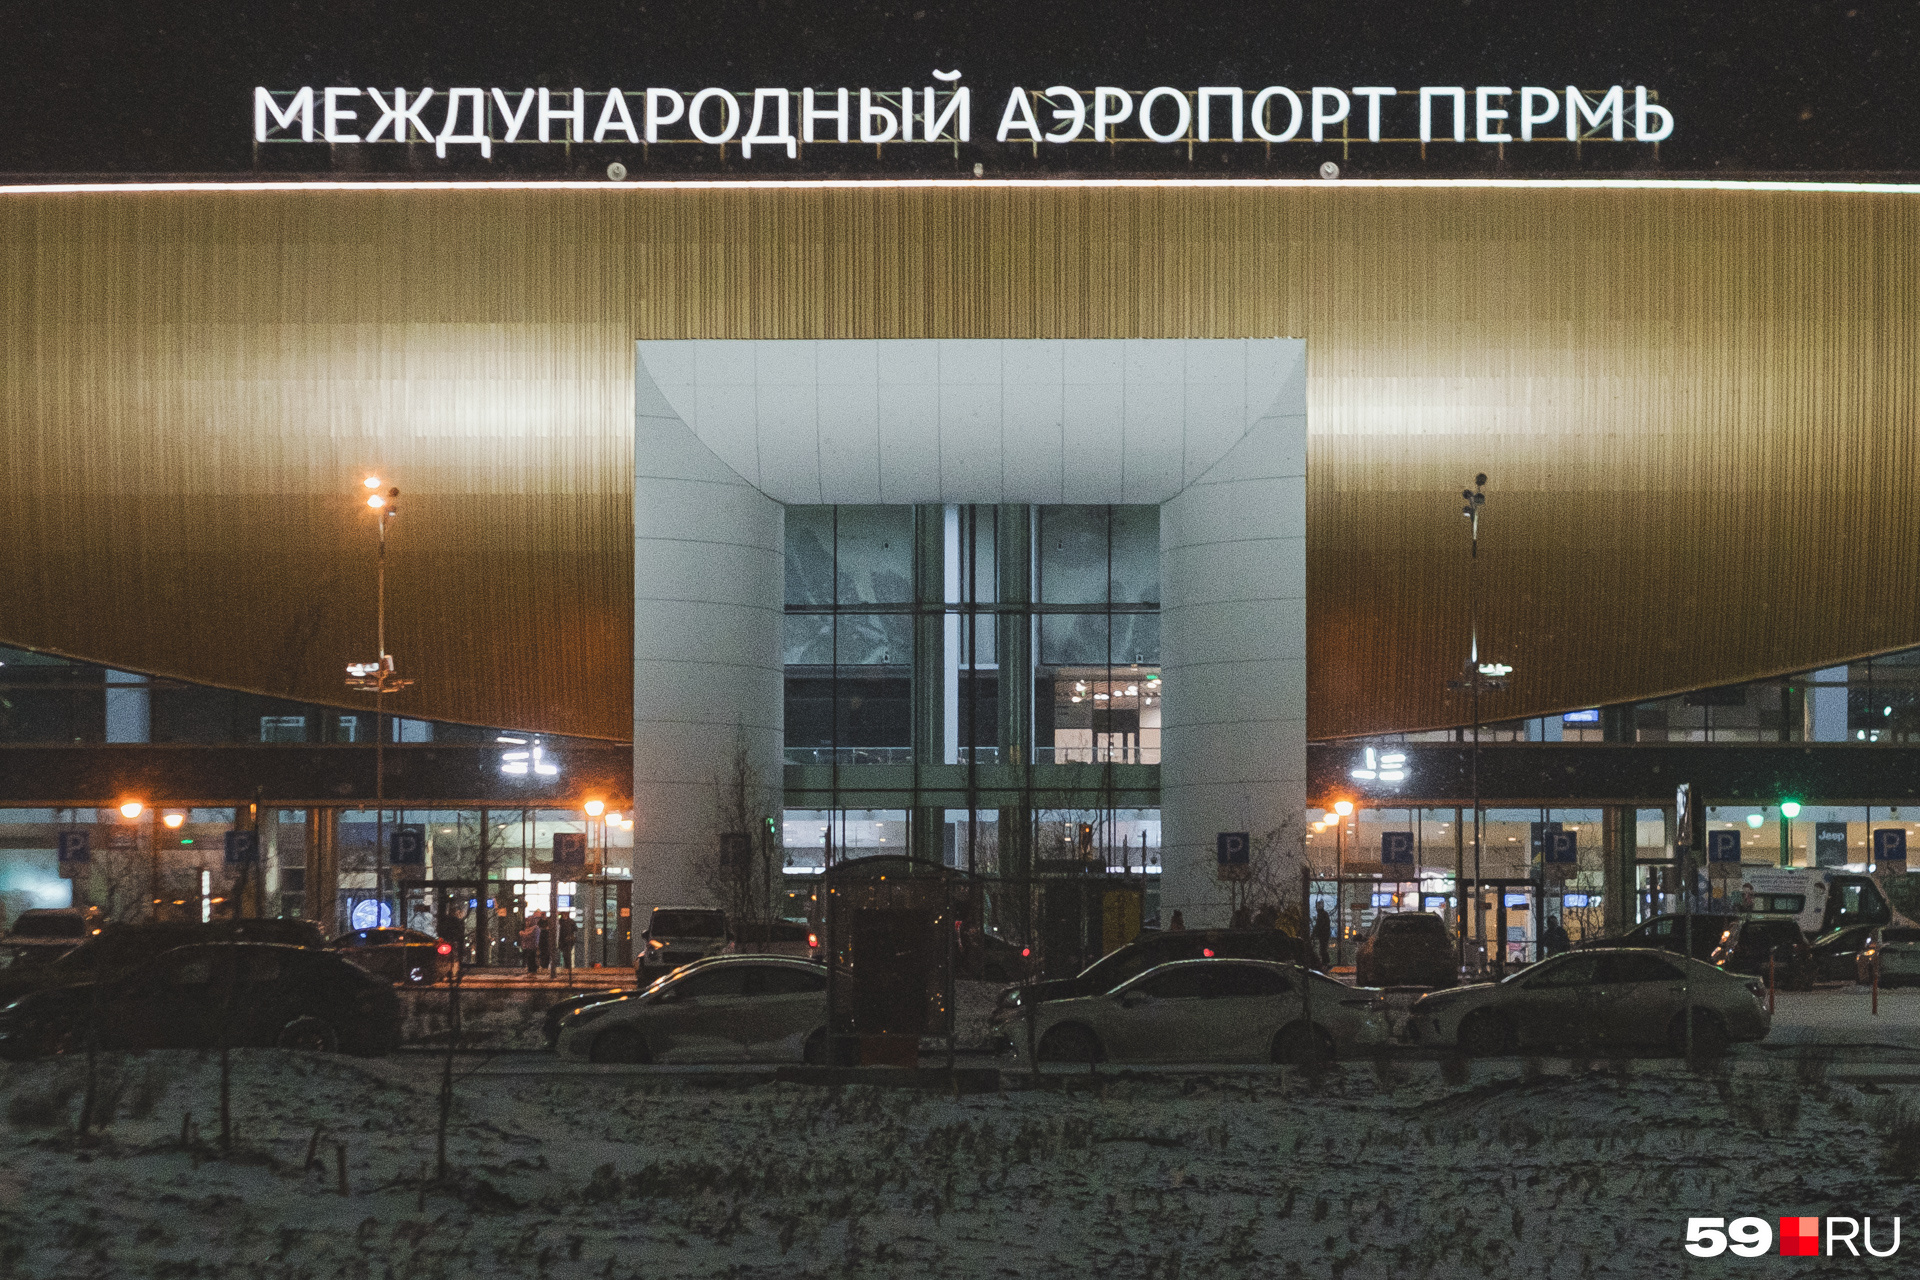 Аэропорт Перми закрылся ночью из-за погодных условий и состояния взлетно-посадочной полосы после снегопада и ледяного дождя, на ВПП снежная каша и гололедица - 22 ноября 2023 - 59.ru